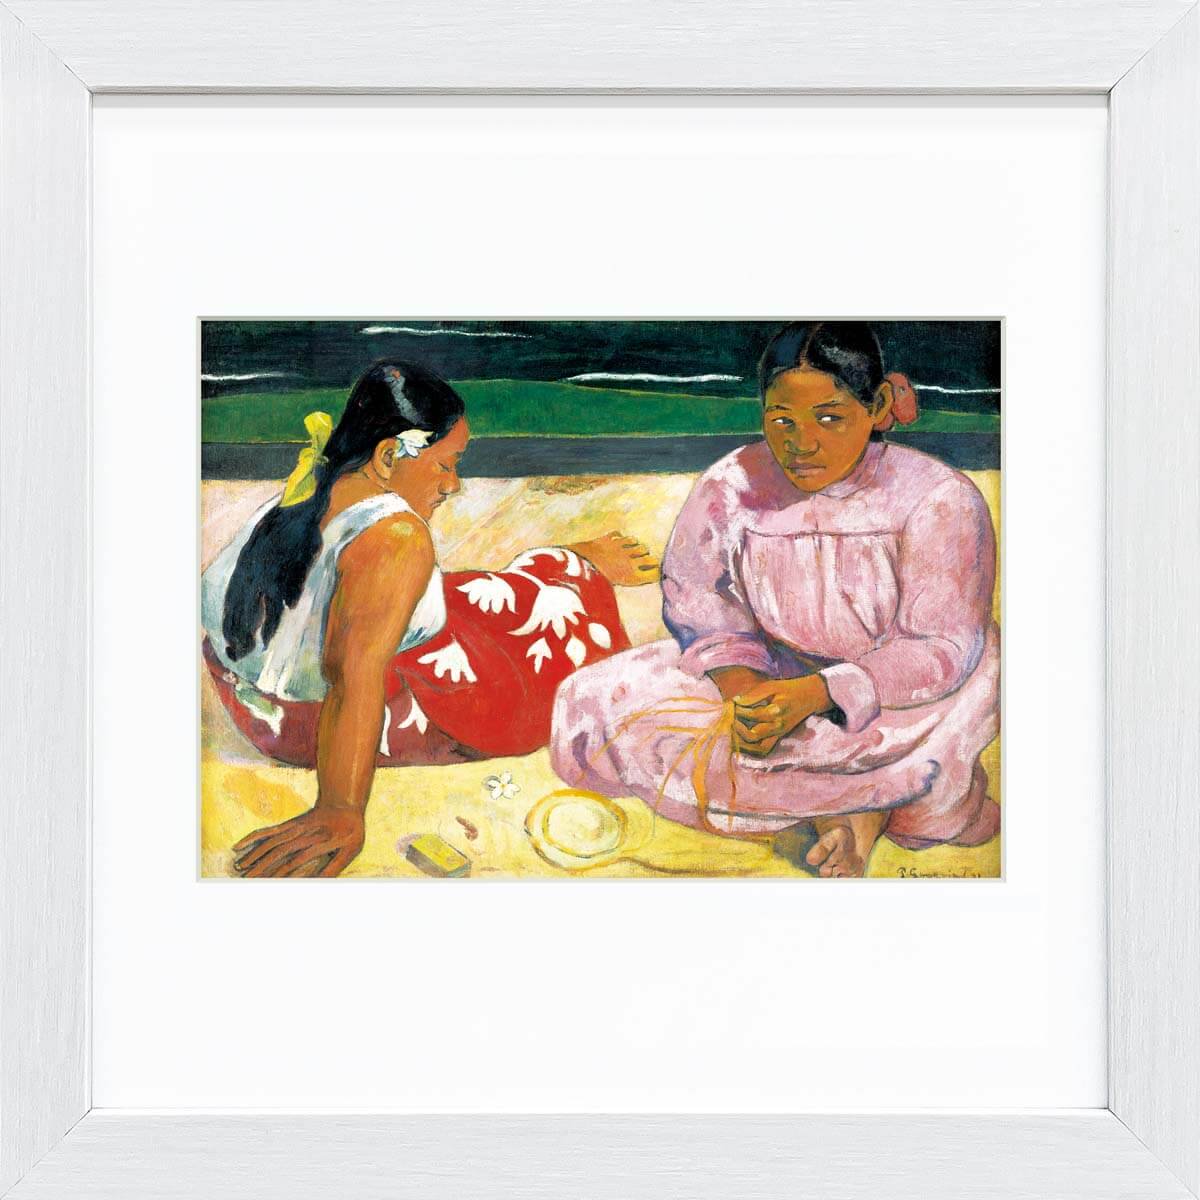 絵画 額装絵画 ポール・ゴーギャン 「市場」 世界の名画シリーズ - 美術品